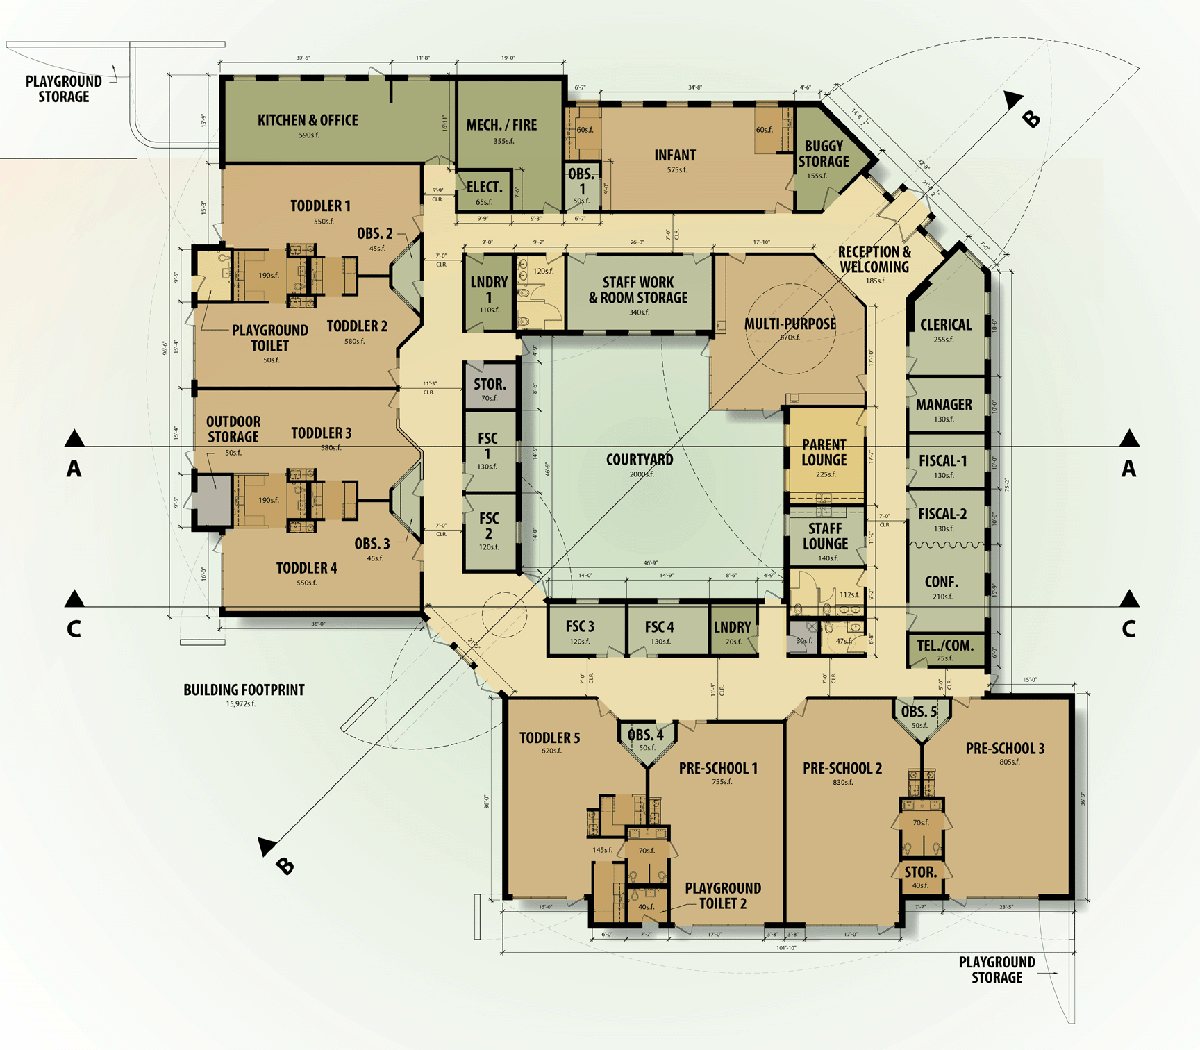 Conceptual Floor Plan